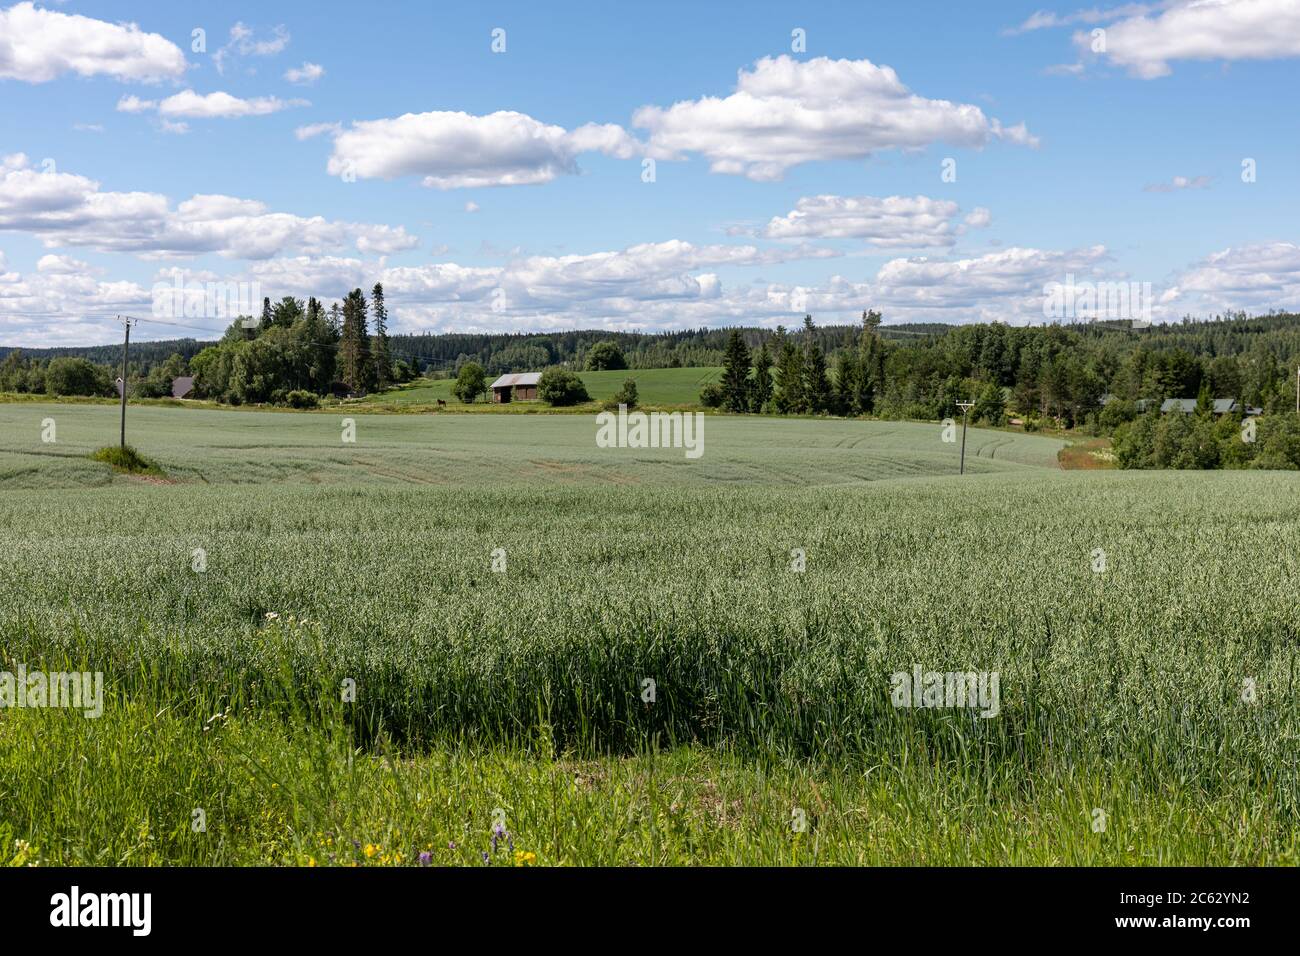 Vue sur la campagne finlandaise avec champ d'avoine verte (Avena sativa) à Orivesi, Finlande Banque D'Images